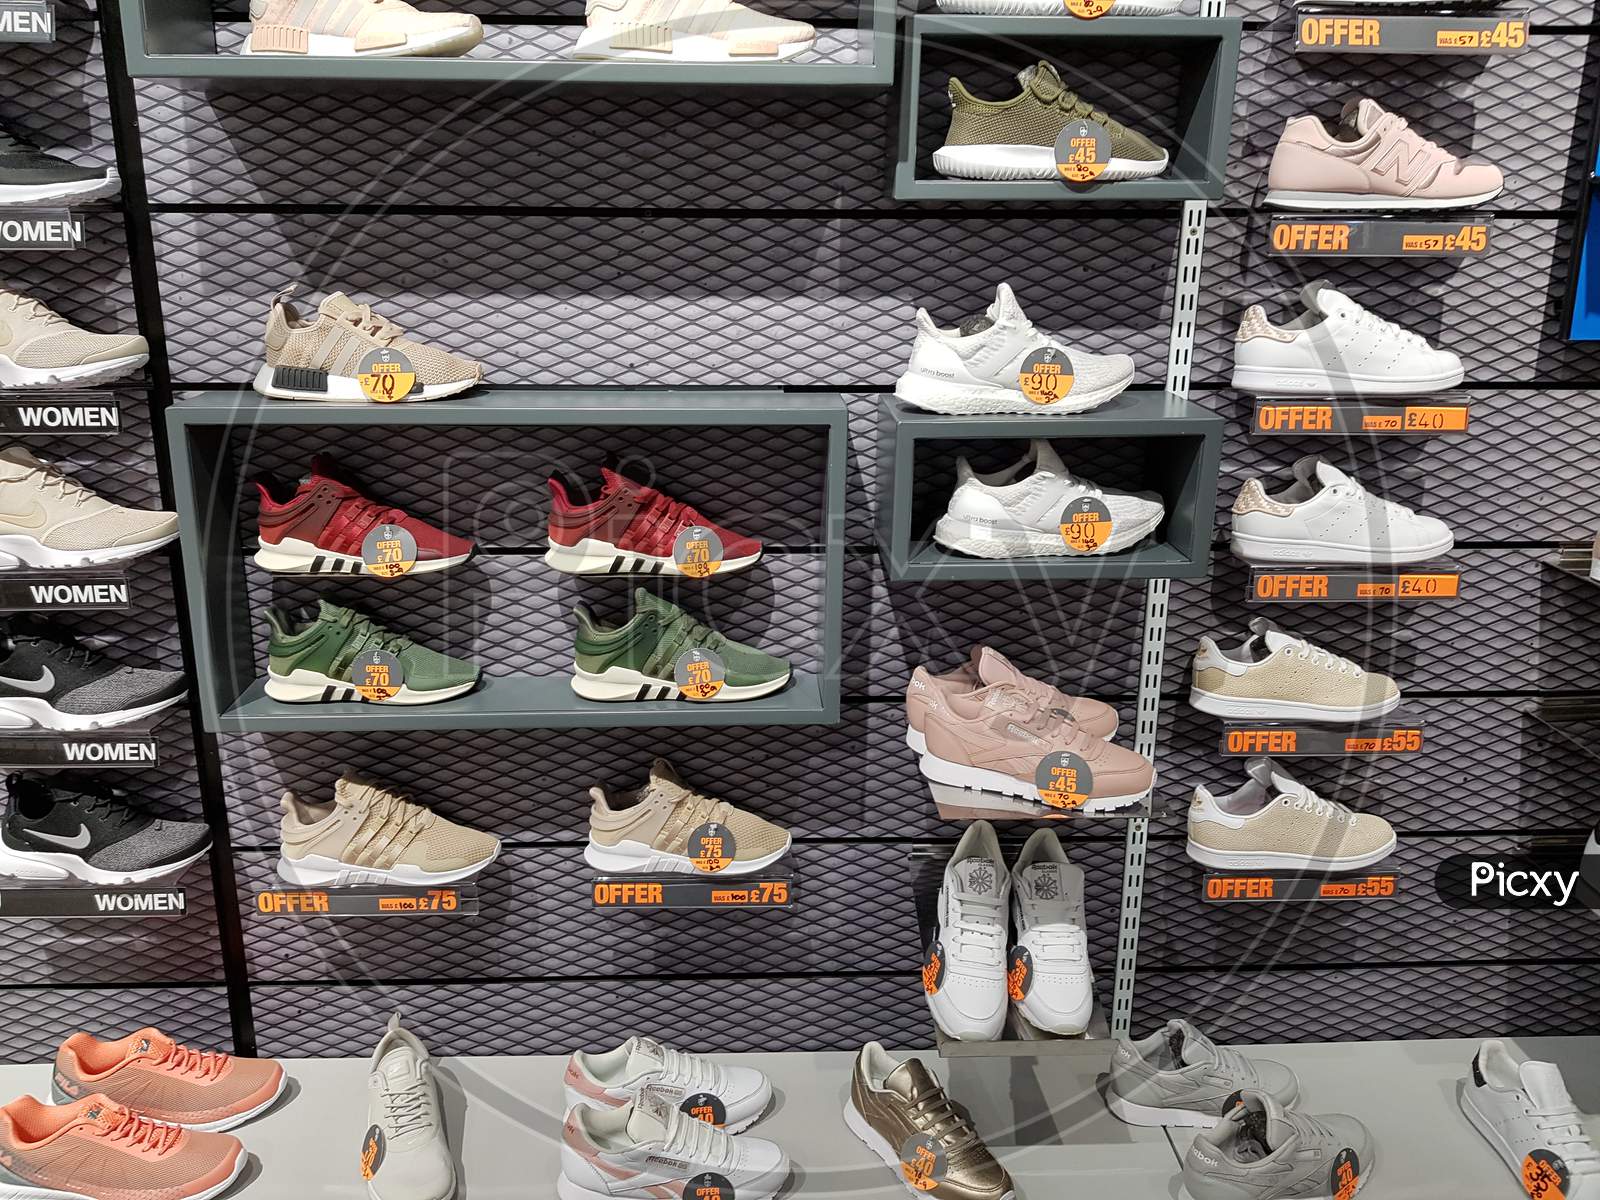 Shoe Racks in a Store